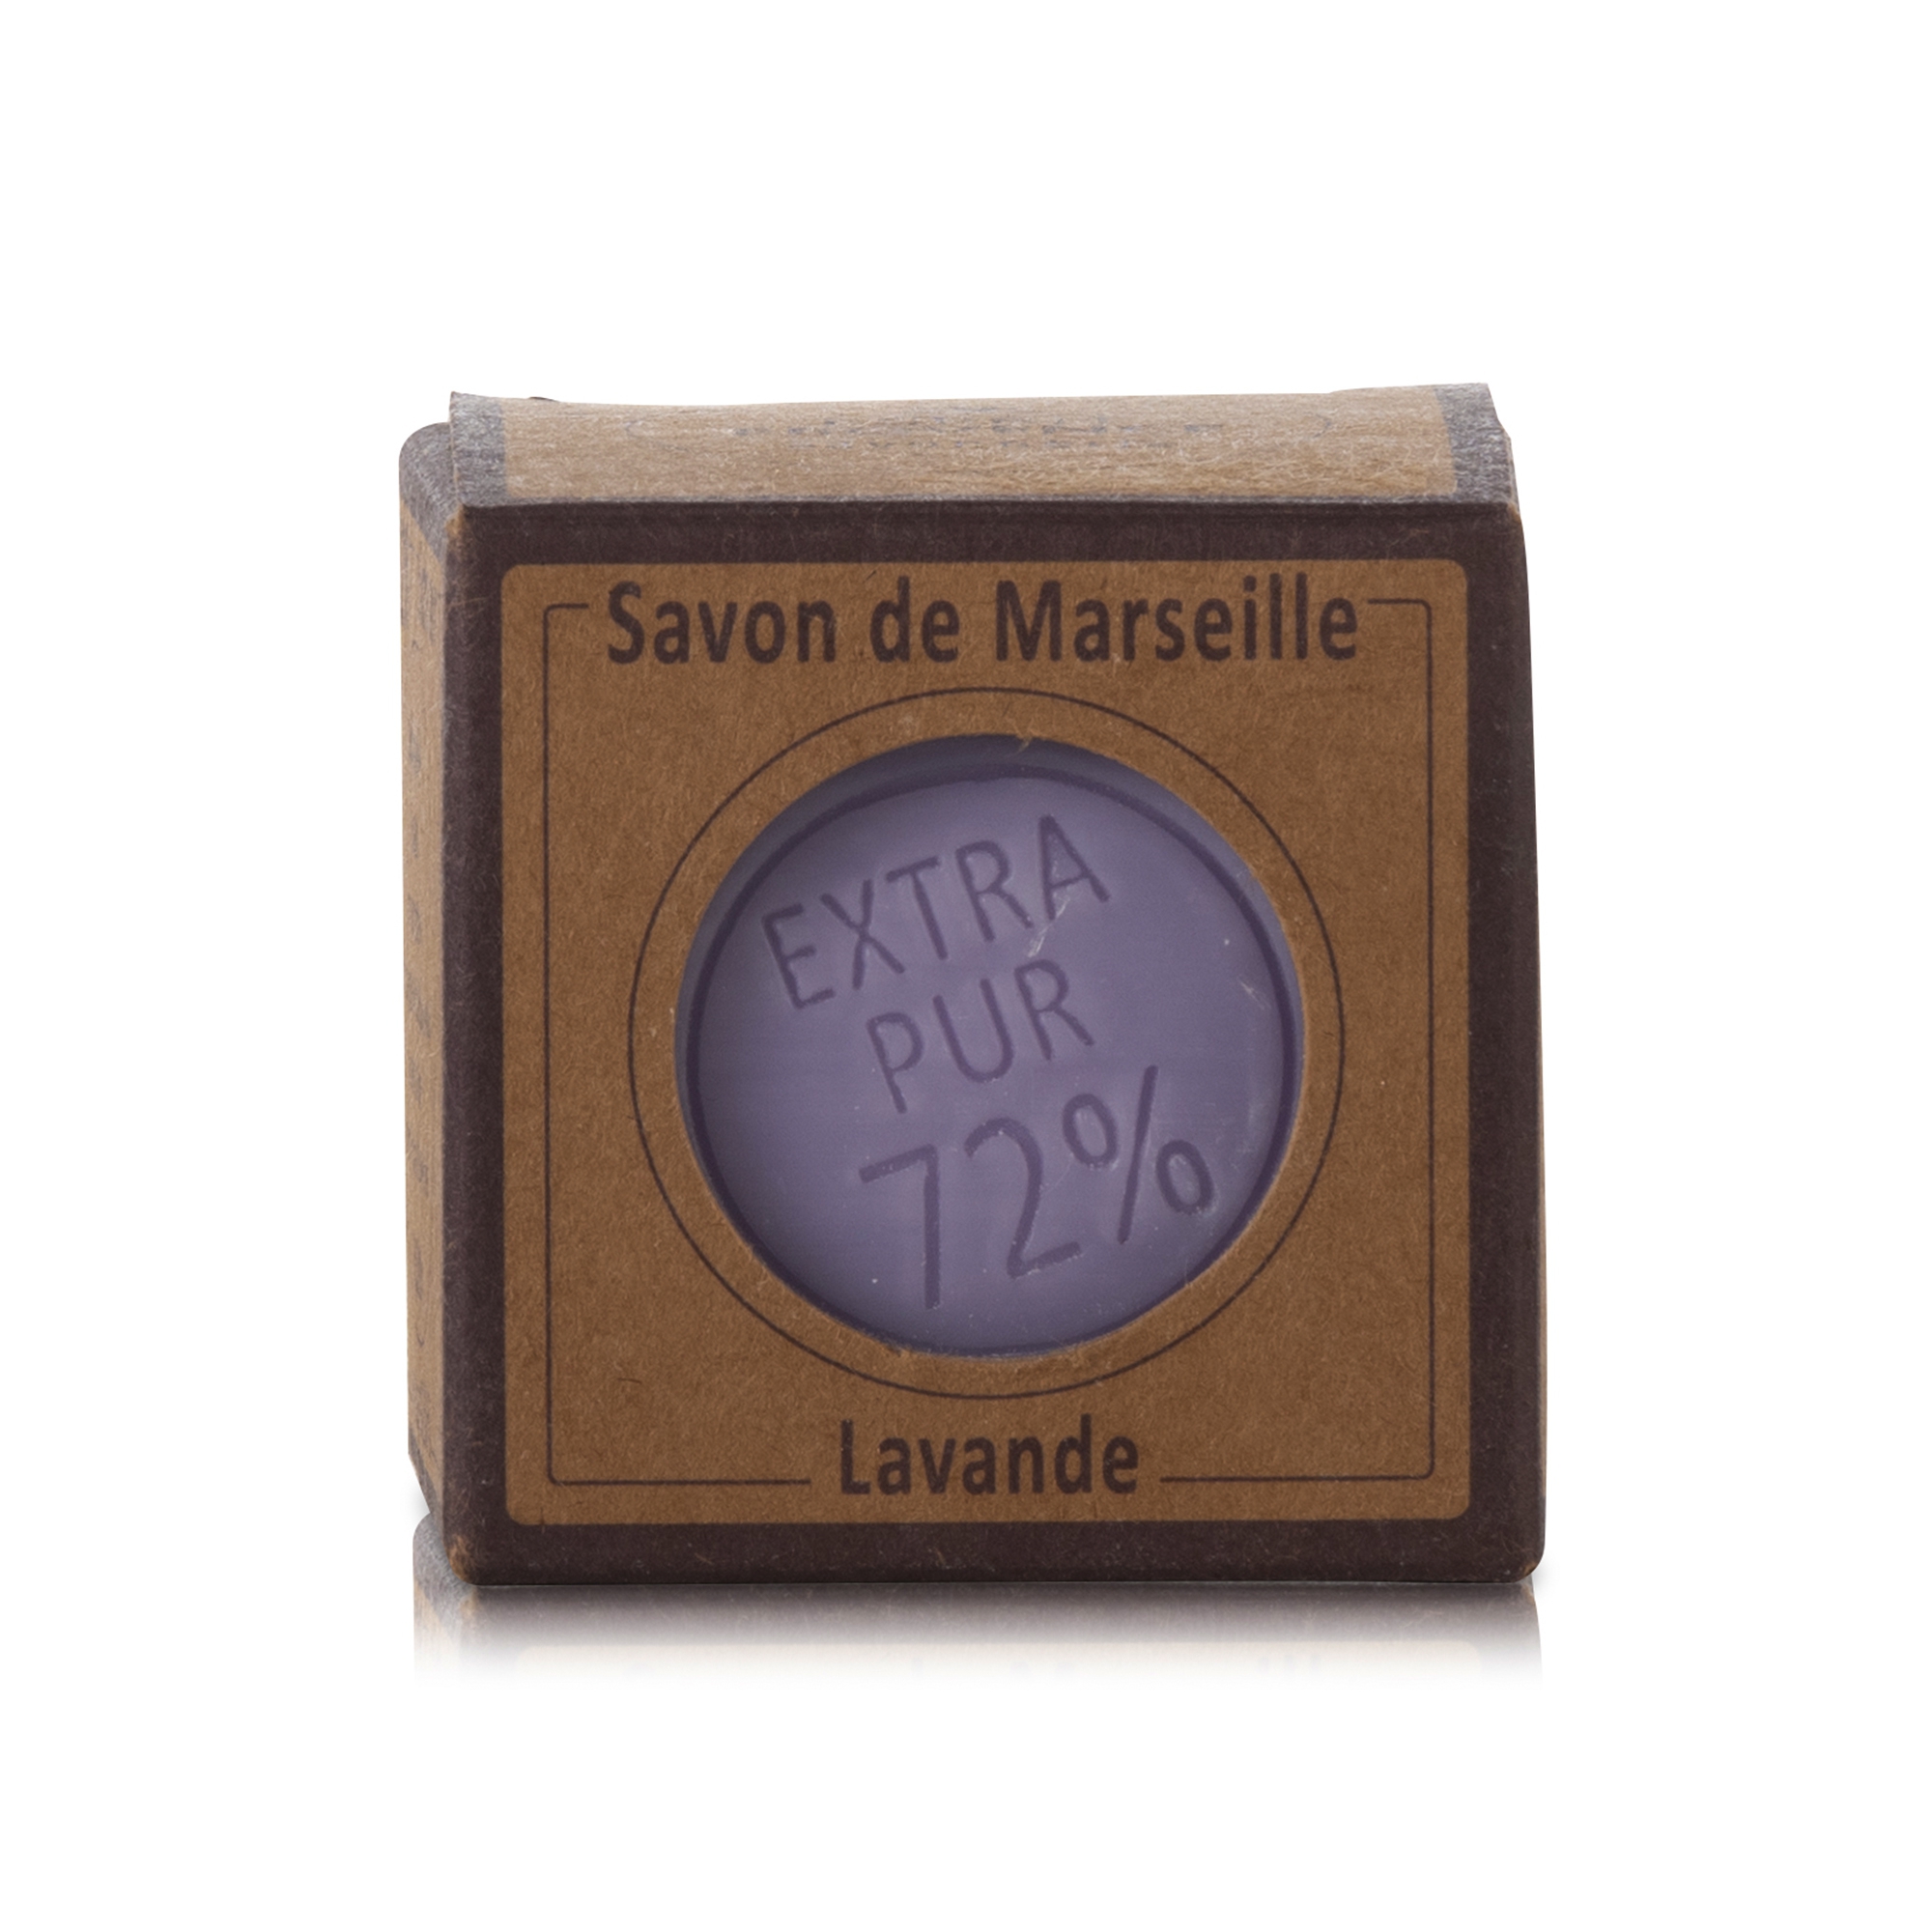 Lavande Savon Curd Pur 100g cube Savon de Marseille